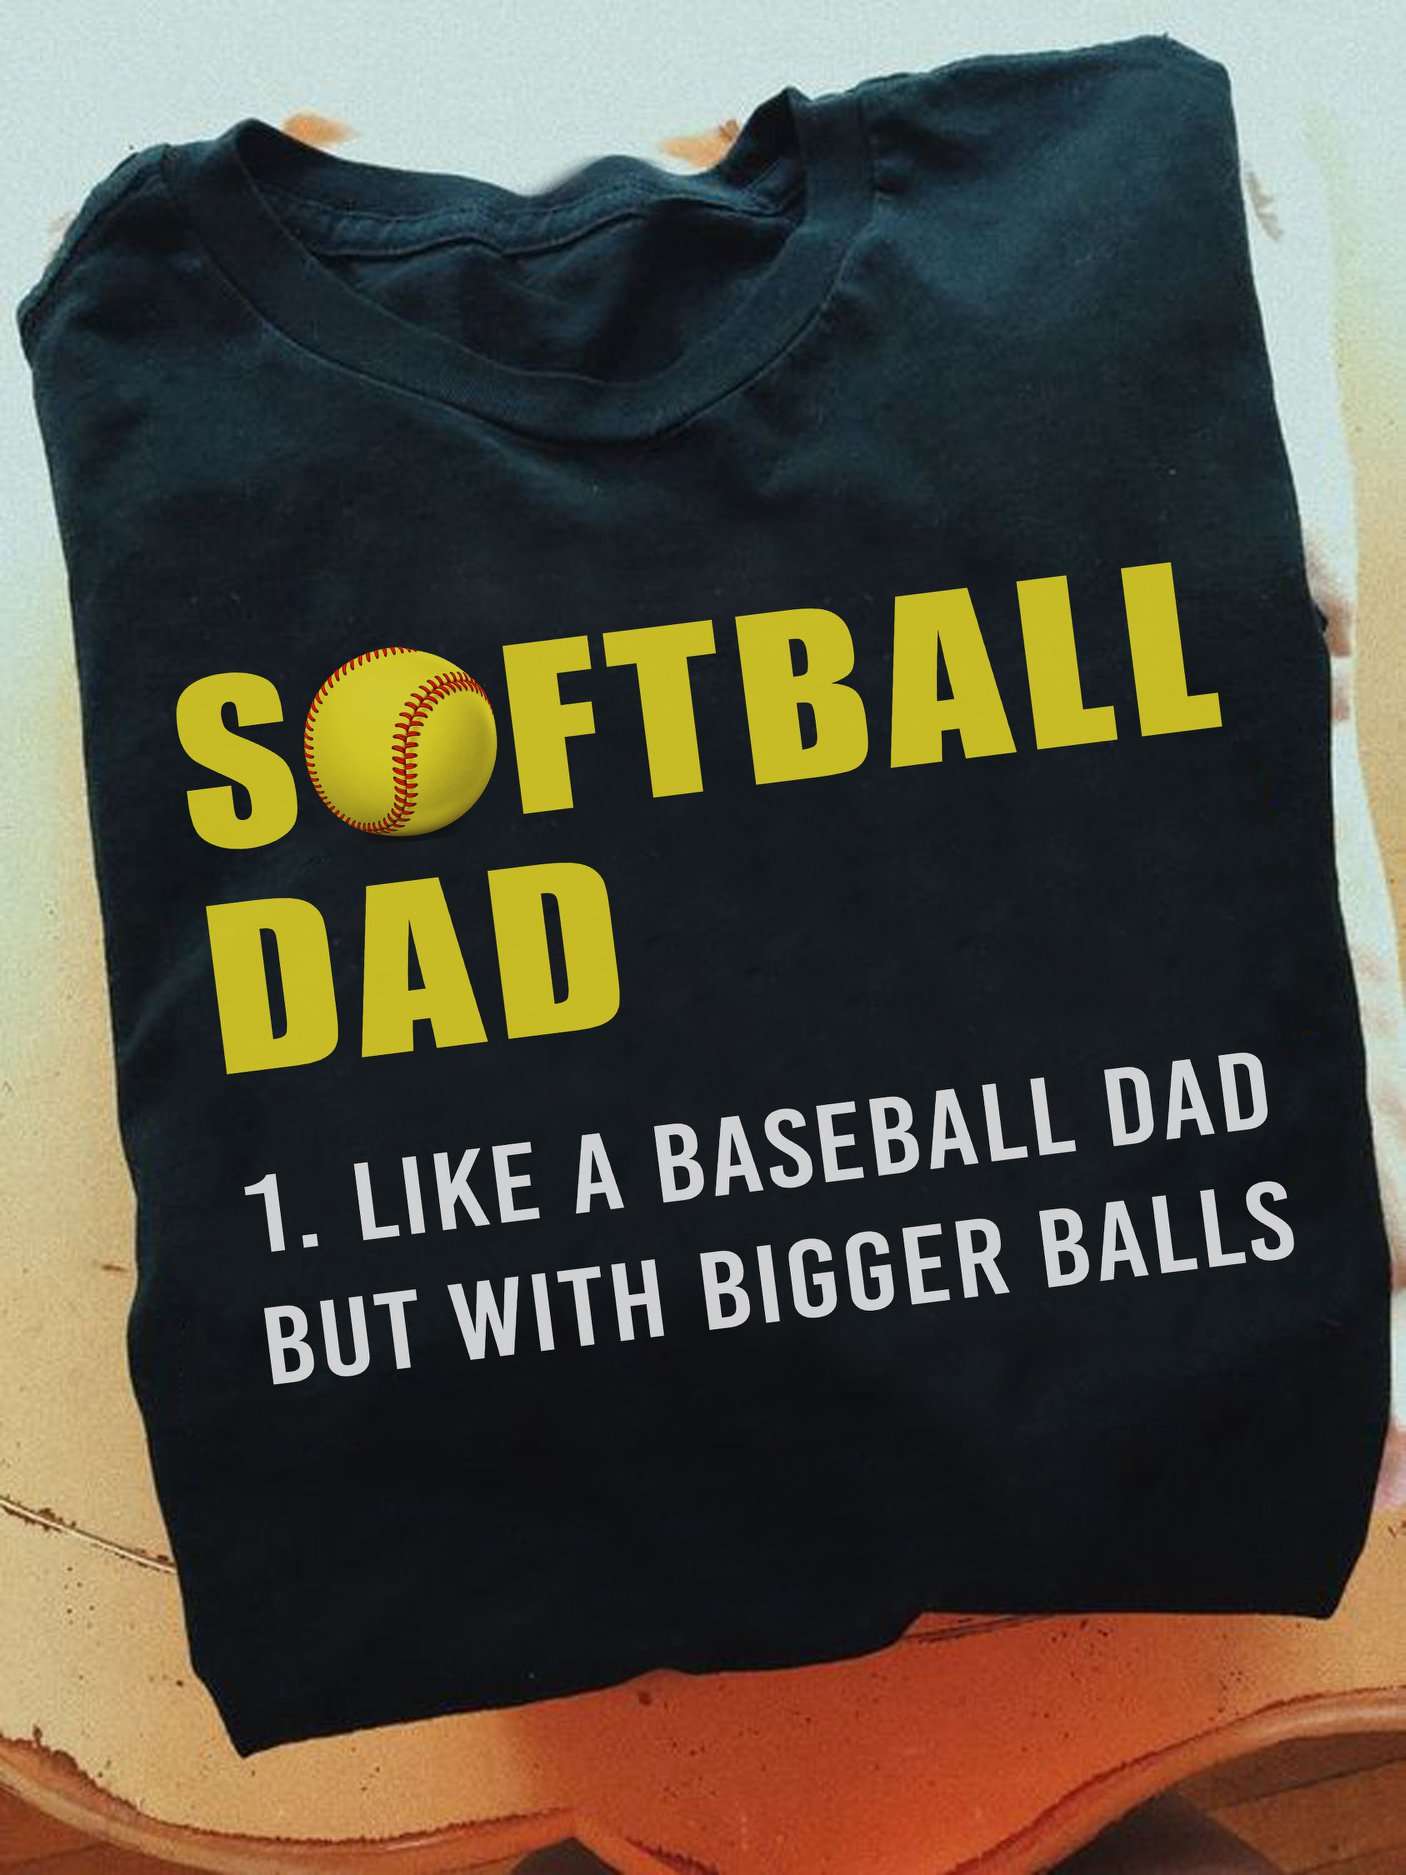 Softball dad like a baseball dad but with bigger balls - Father plays softball